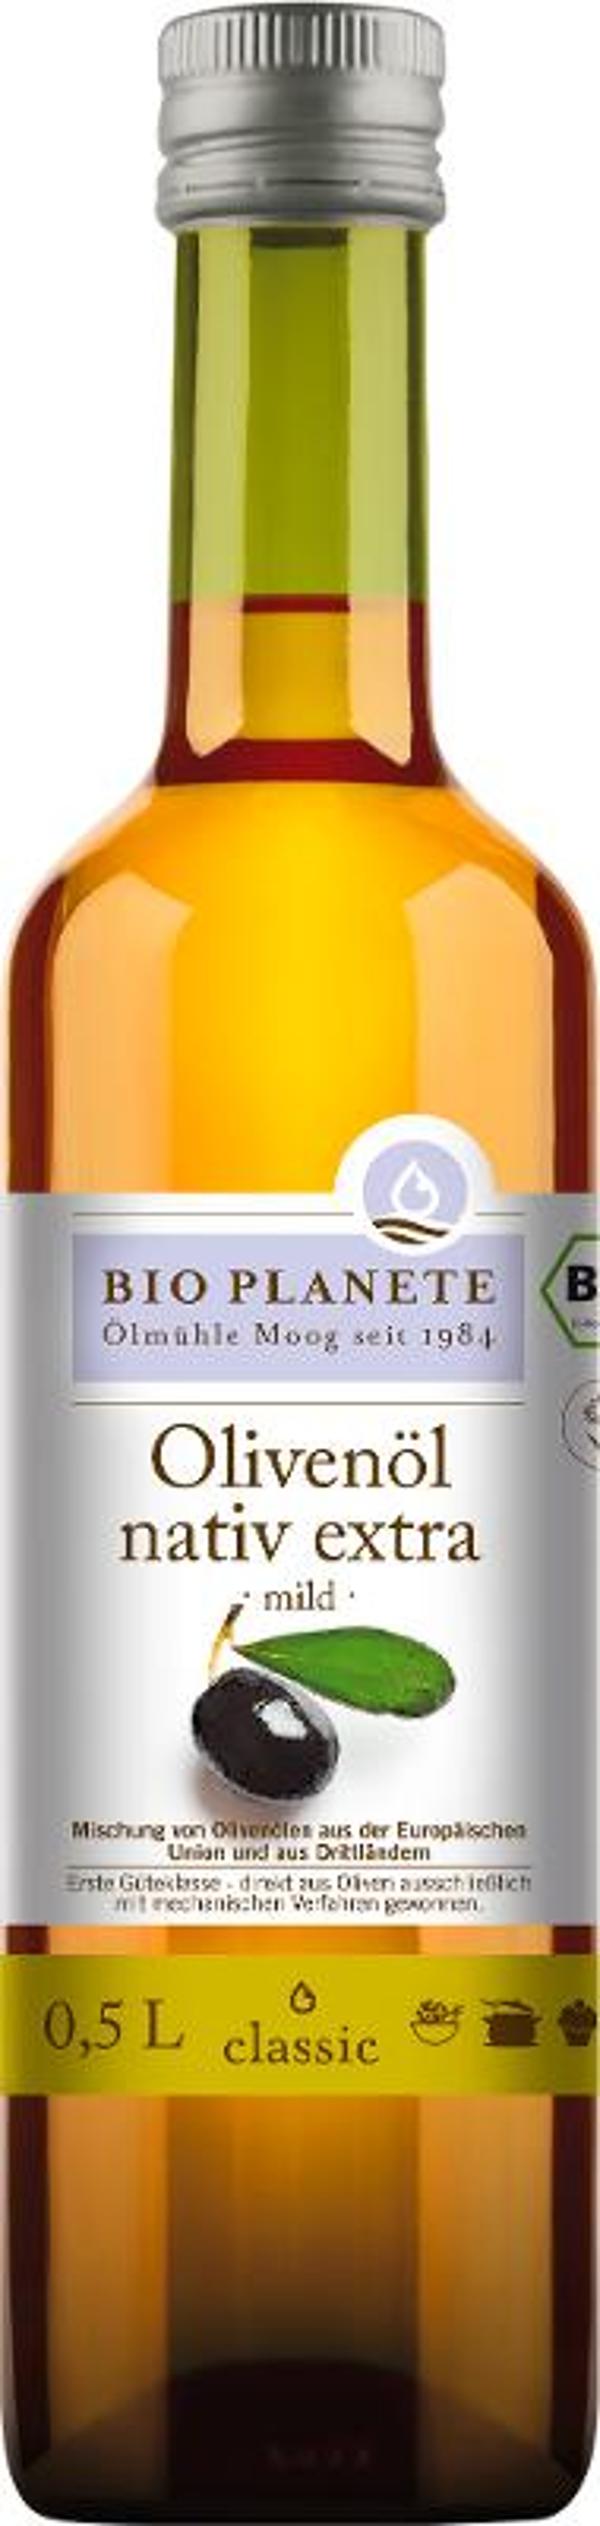 Produktfoto zu Olivenöl, nativ extra 0,5l von Bio Planète